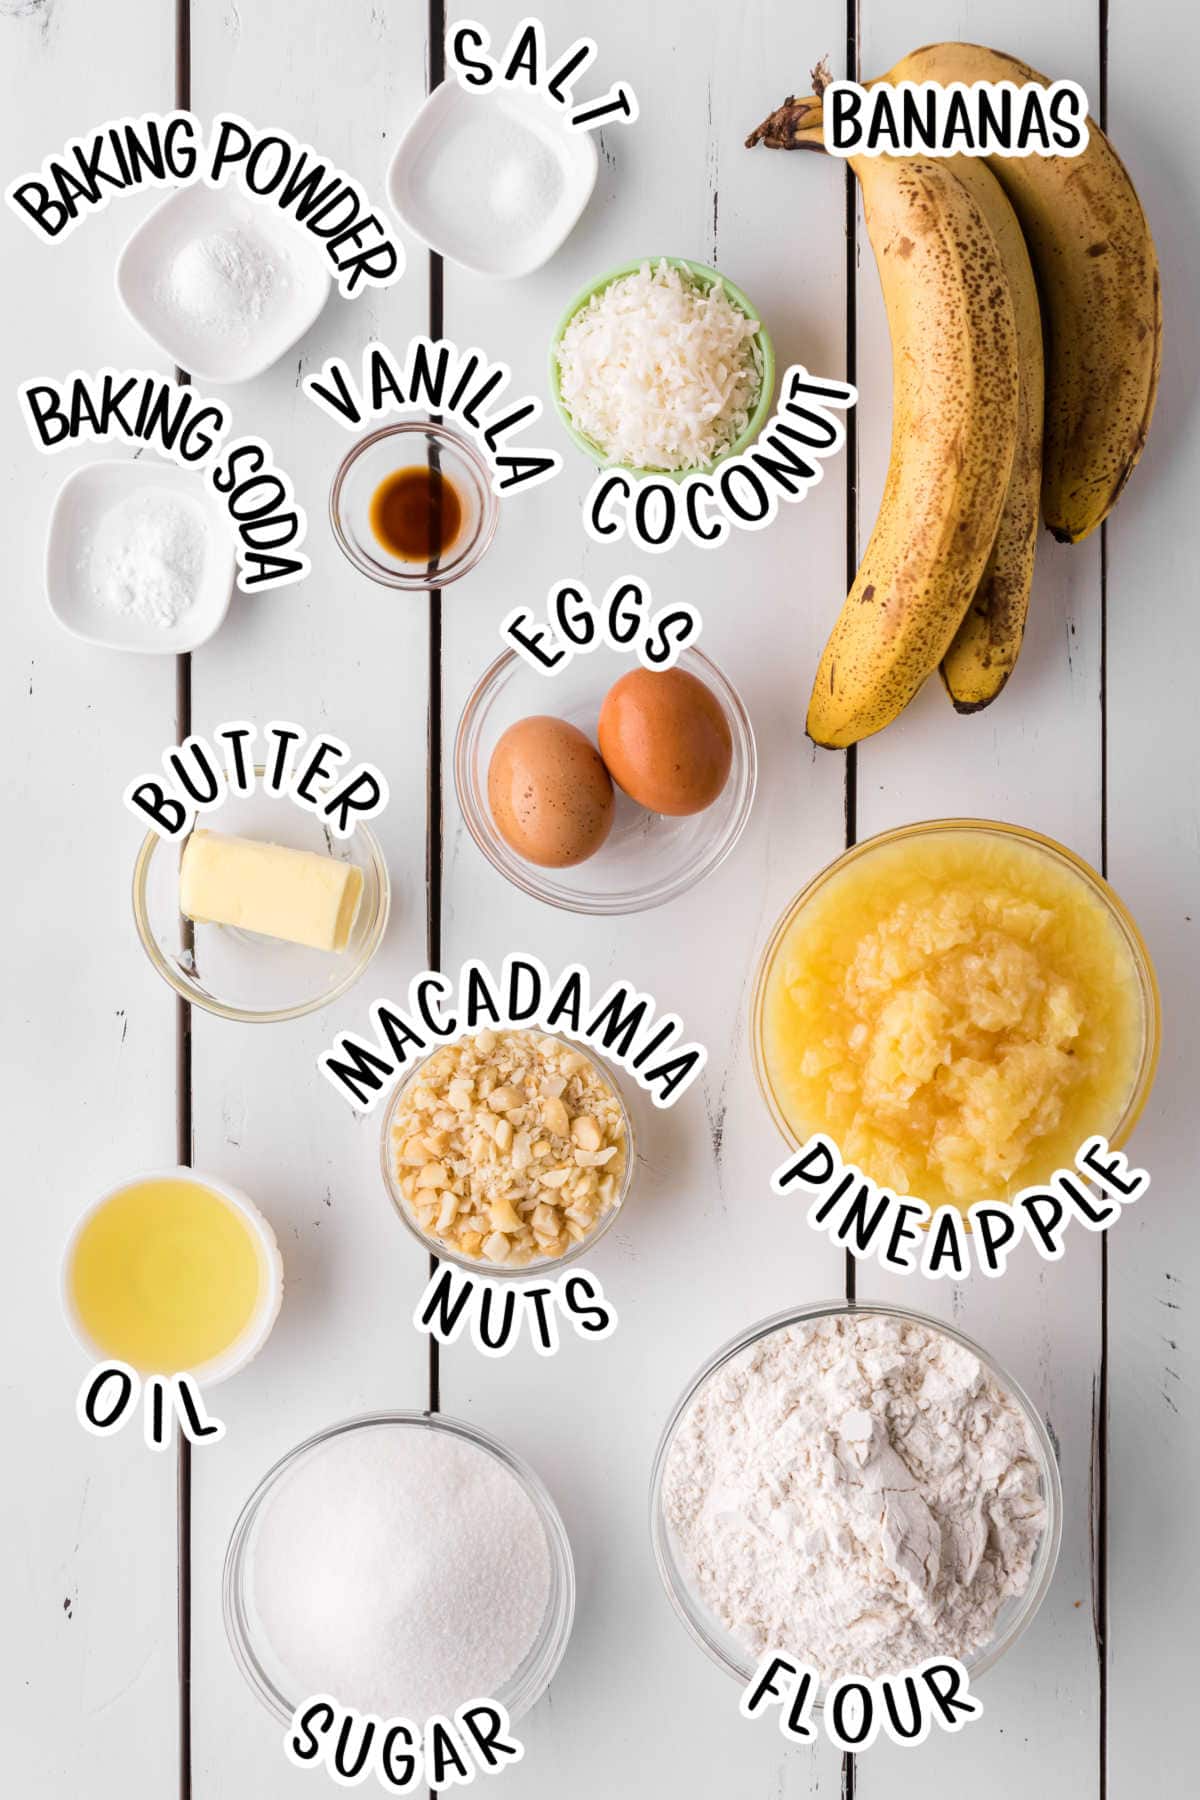 Labeled ingredients for Hawaiian banana bread.